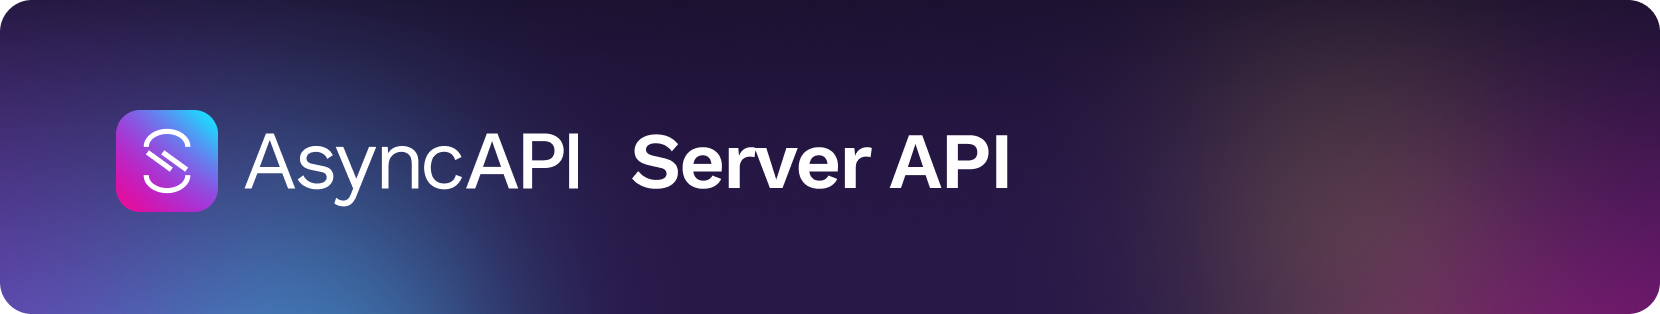 AsyncAPI Server API